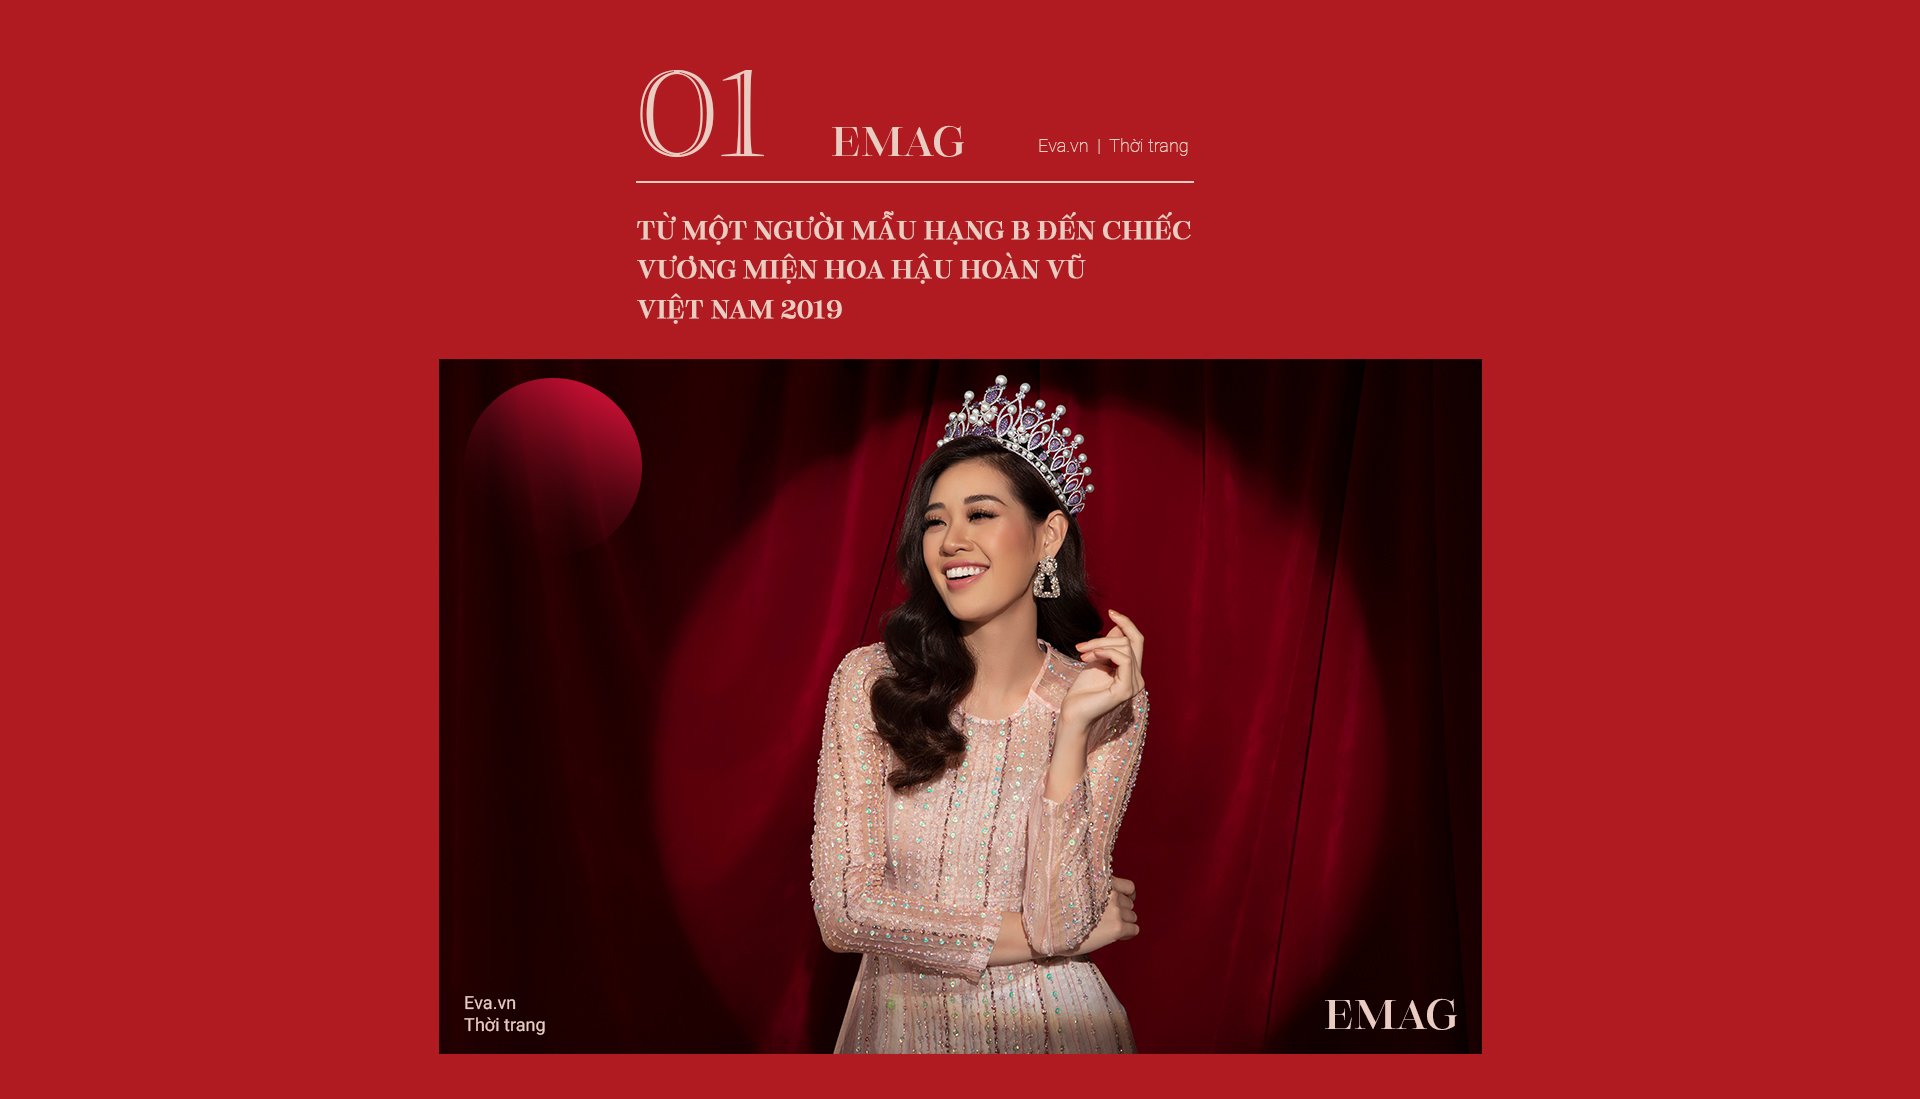 Hoa hậu Hoàn vũ Khánh Vân - Biến cố và sóng gió giúp trái tim nhân ái đăng quang - 3